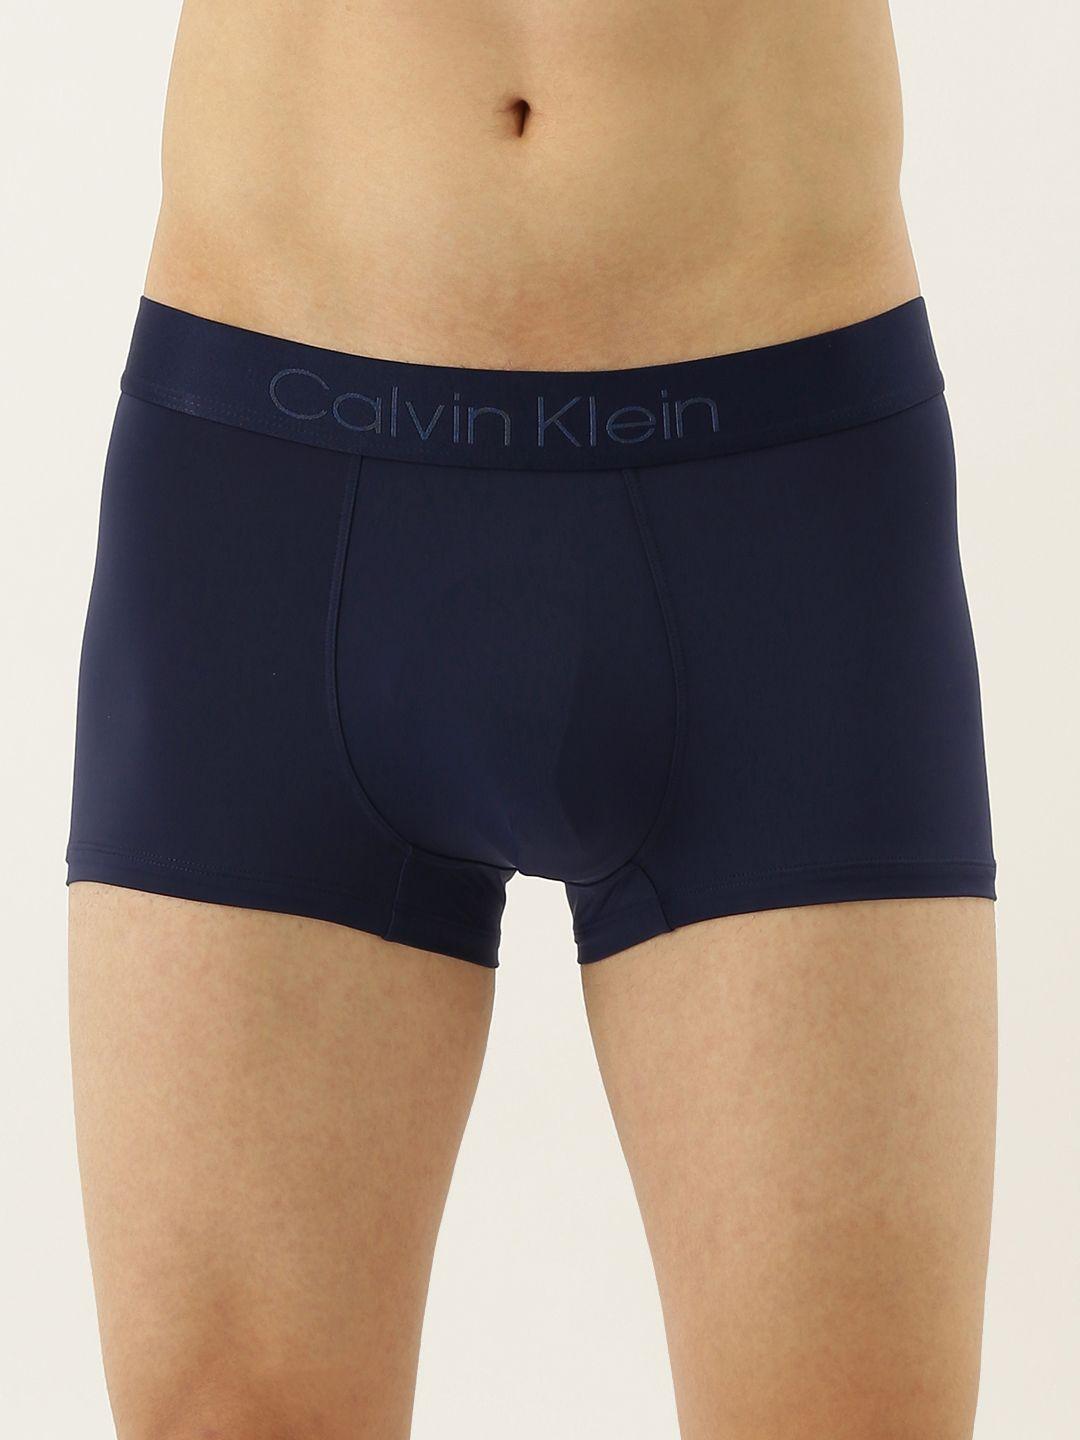 calvin-klein-underwear-men-navy-blue-solid-trunks-nb19298sb